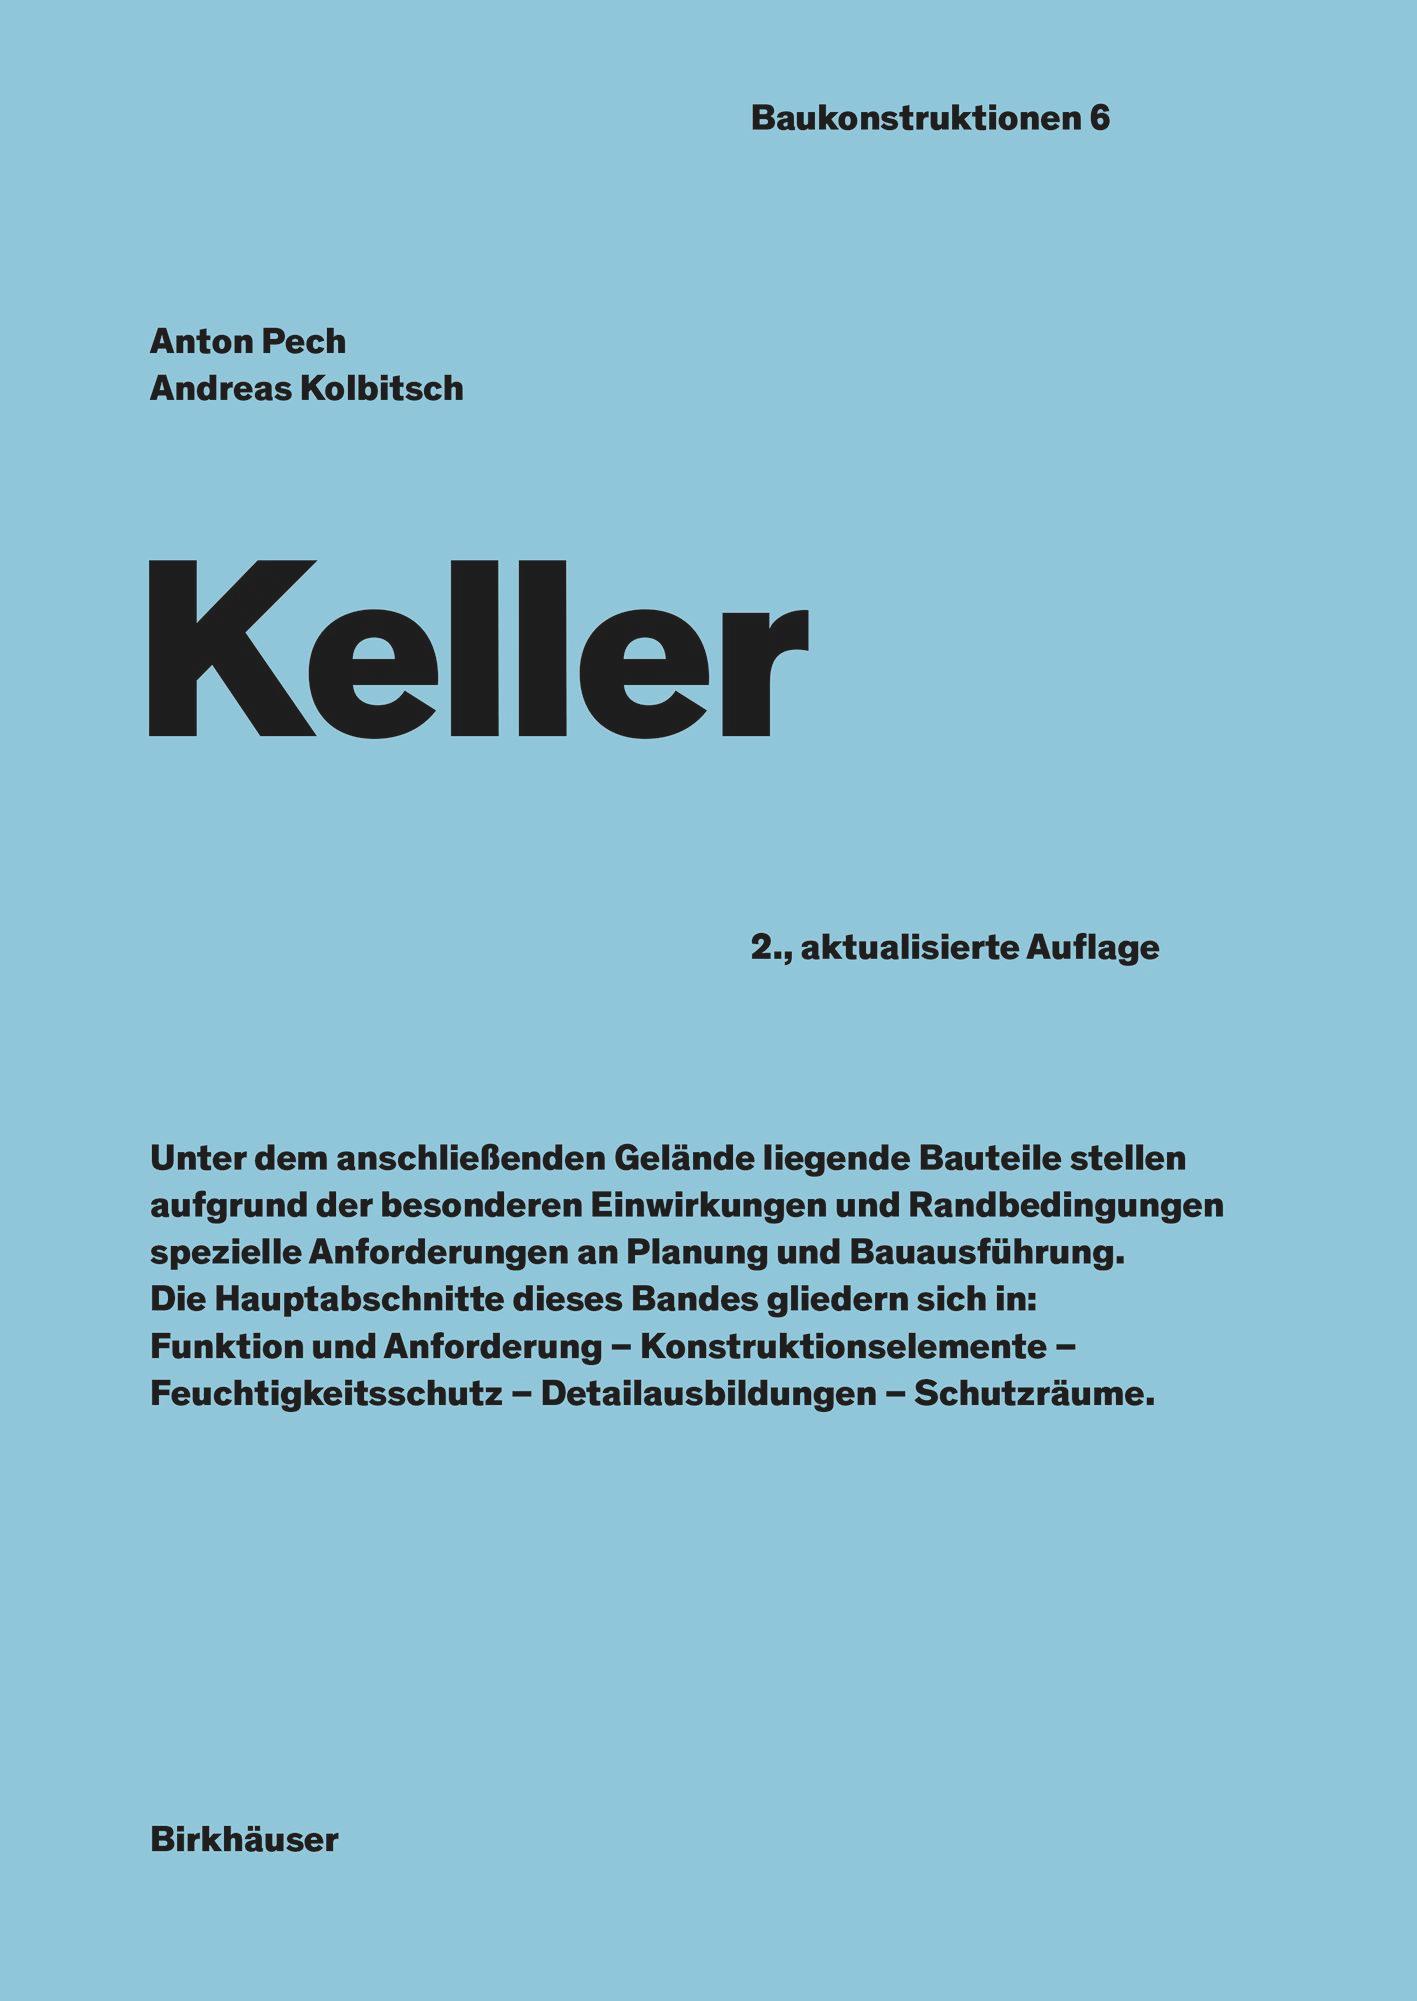 Keller's cover